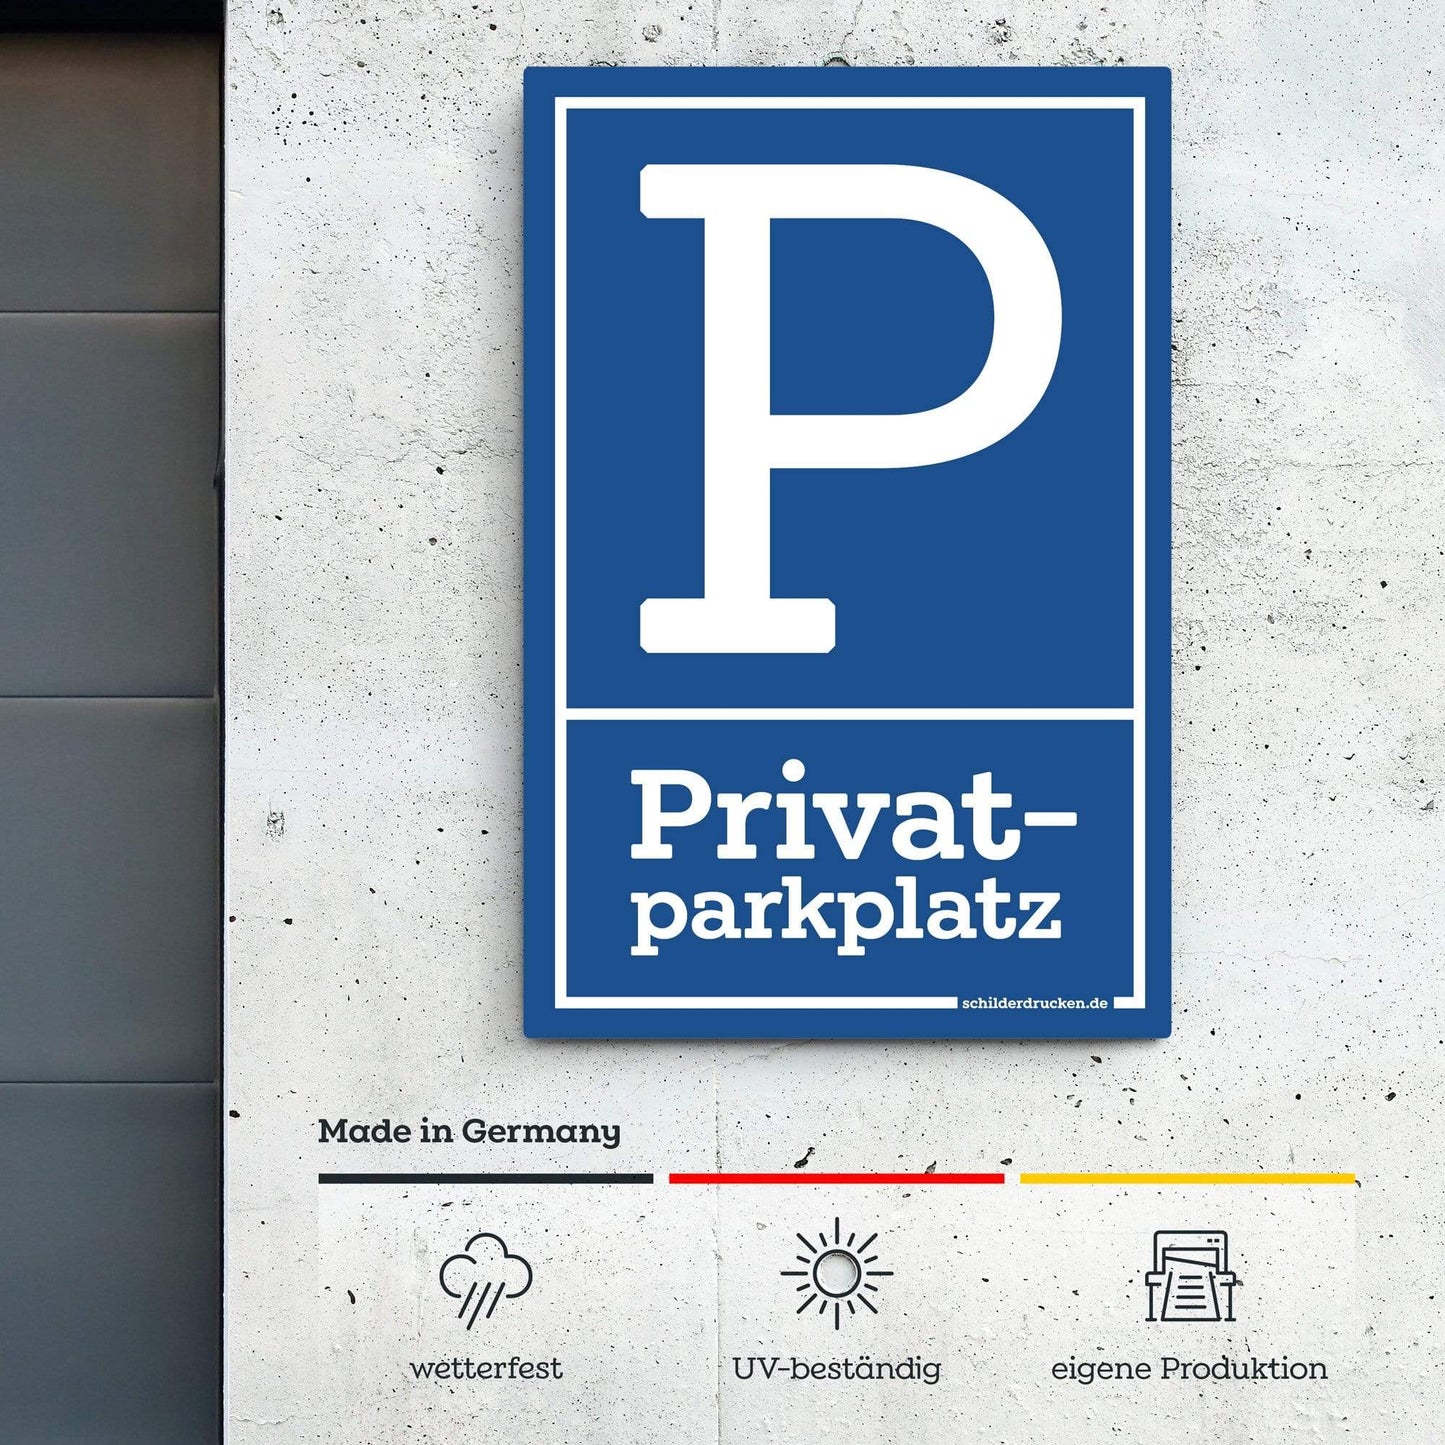 Privatparkplatz 10 x 15 cm / weiss / Alu-Dibond online drucken lassen bei schilderdrucken.de